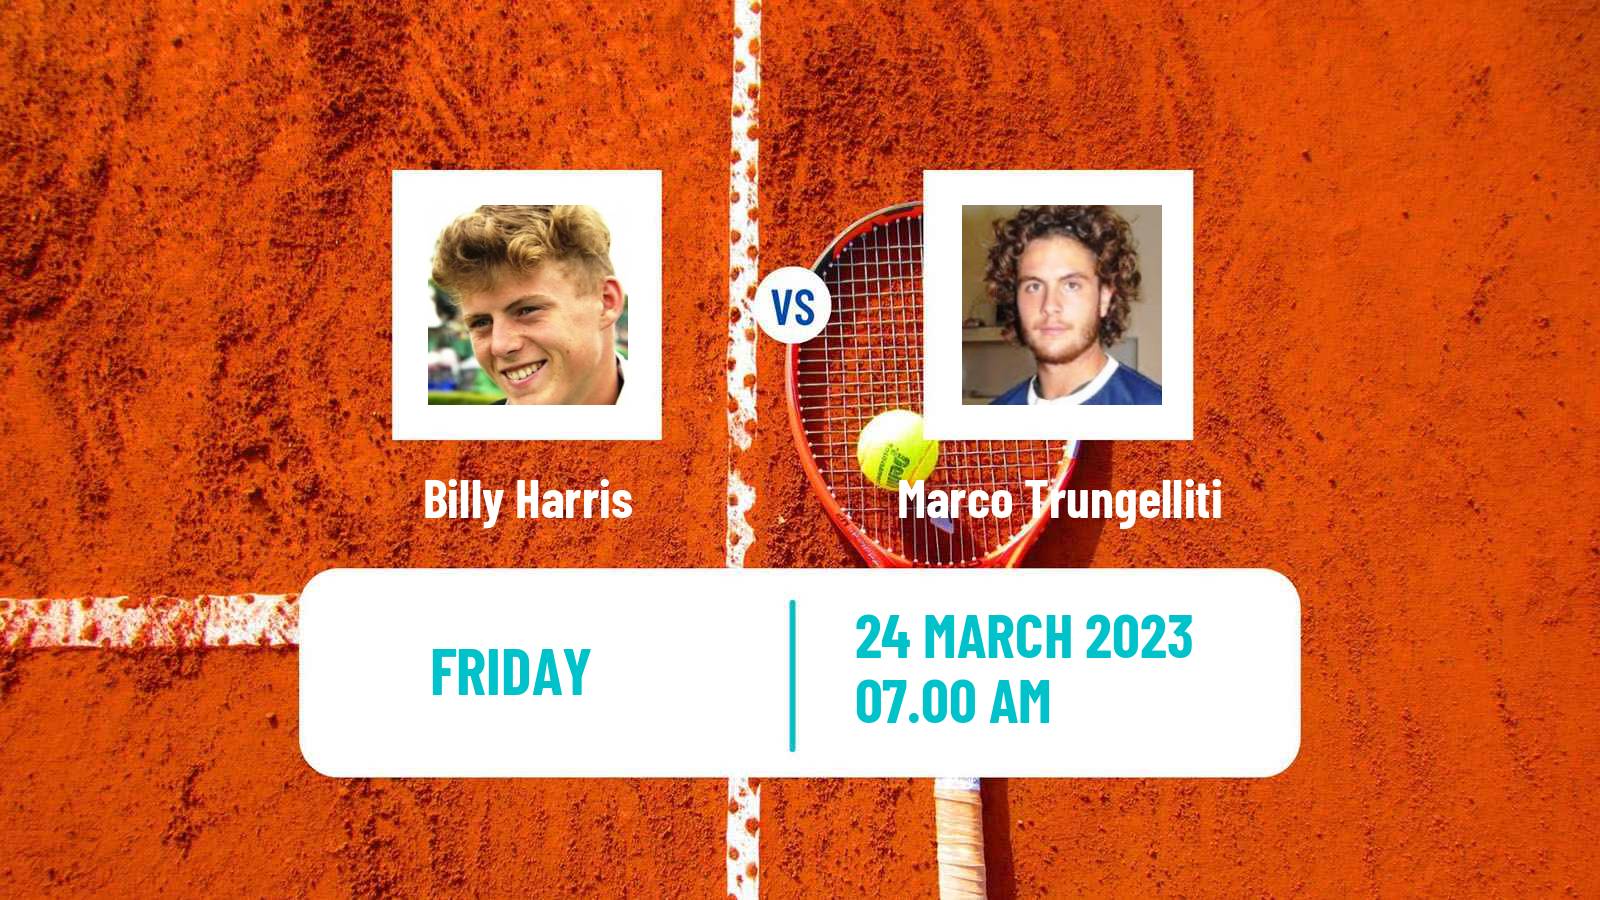 Tennis ATP Challenger Billy Harris - Marco Trungelliti